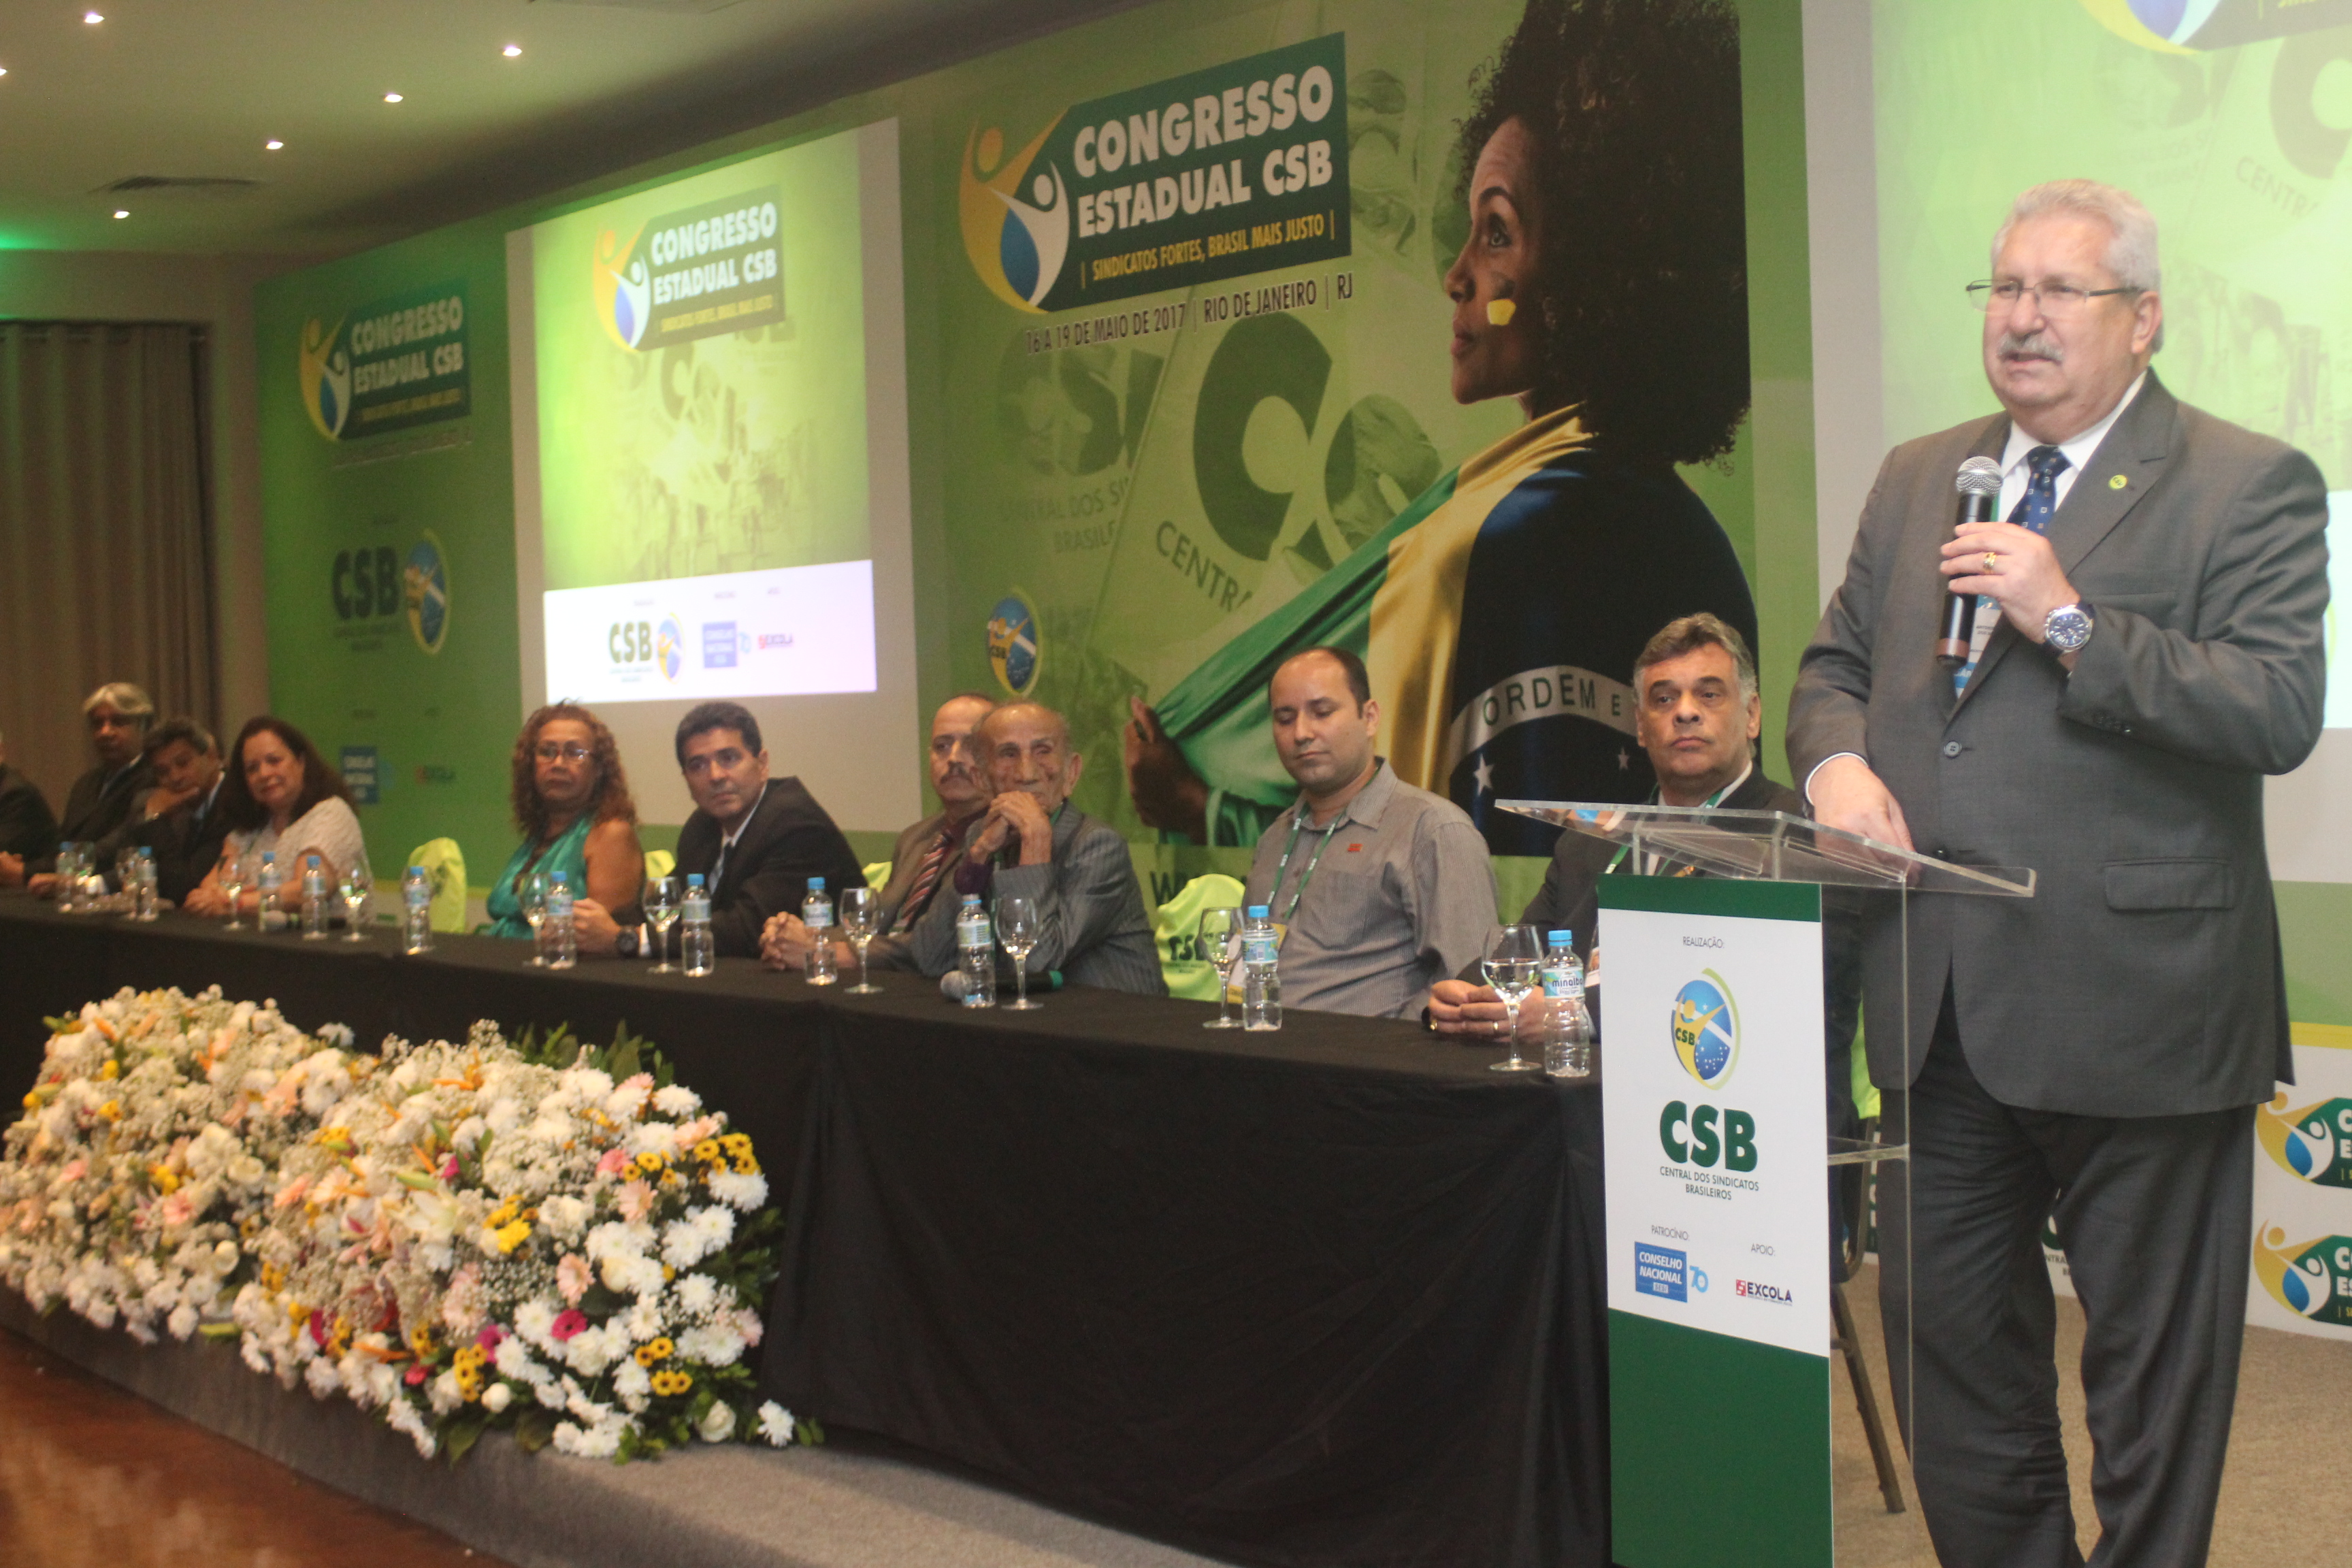 Cerimônia de abertura do Congresso Estadual CSB Rio de Janeiro – 16 a 19 de maio | 2017